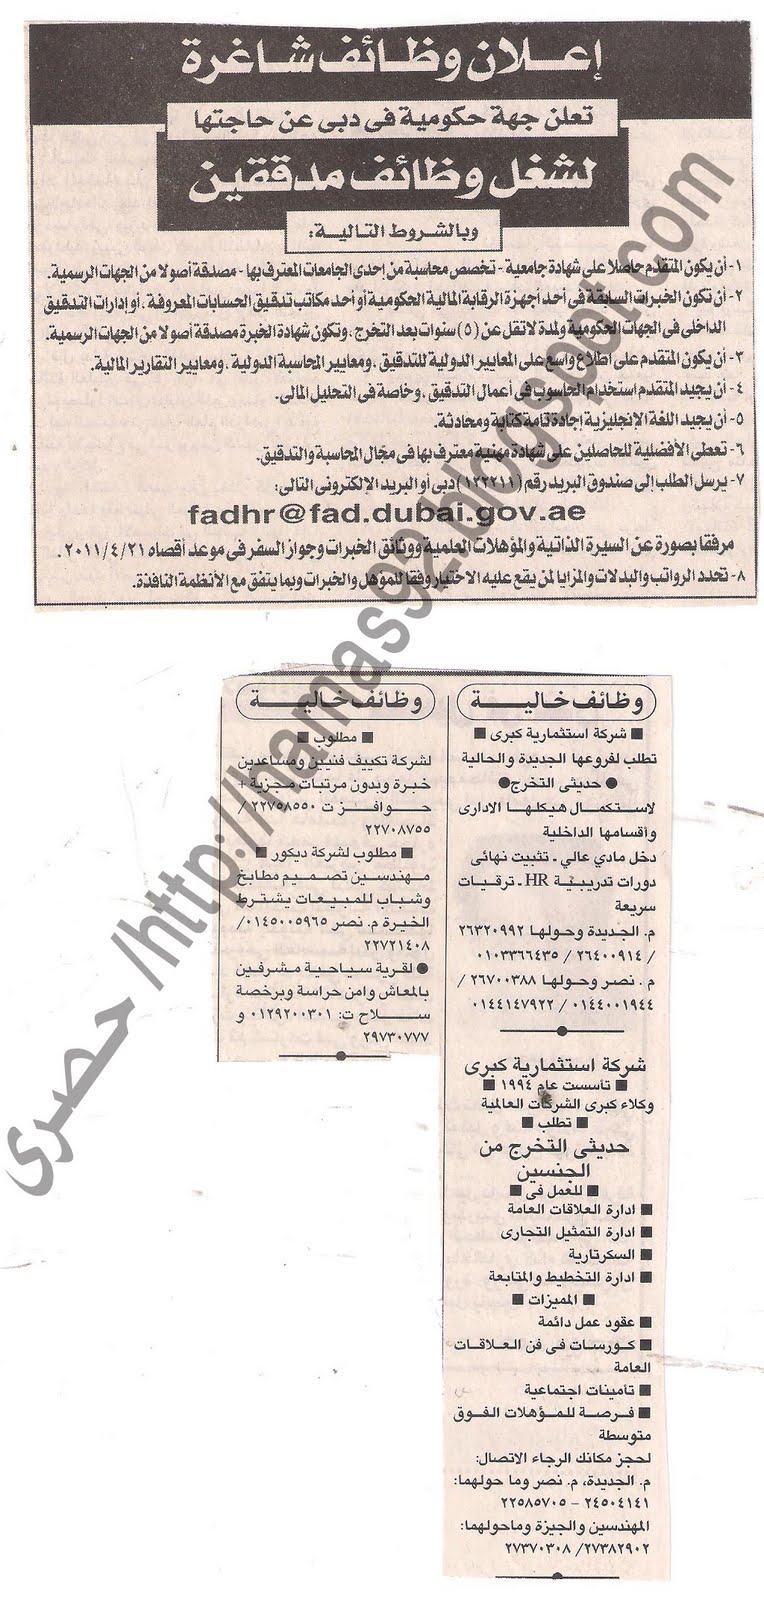 وظائف جريدة الاهرام الاحد 10 ابريل 2011 - وظائف خالية بتاريخ اليوم 10 ابريل 2011 Picture+004